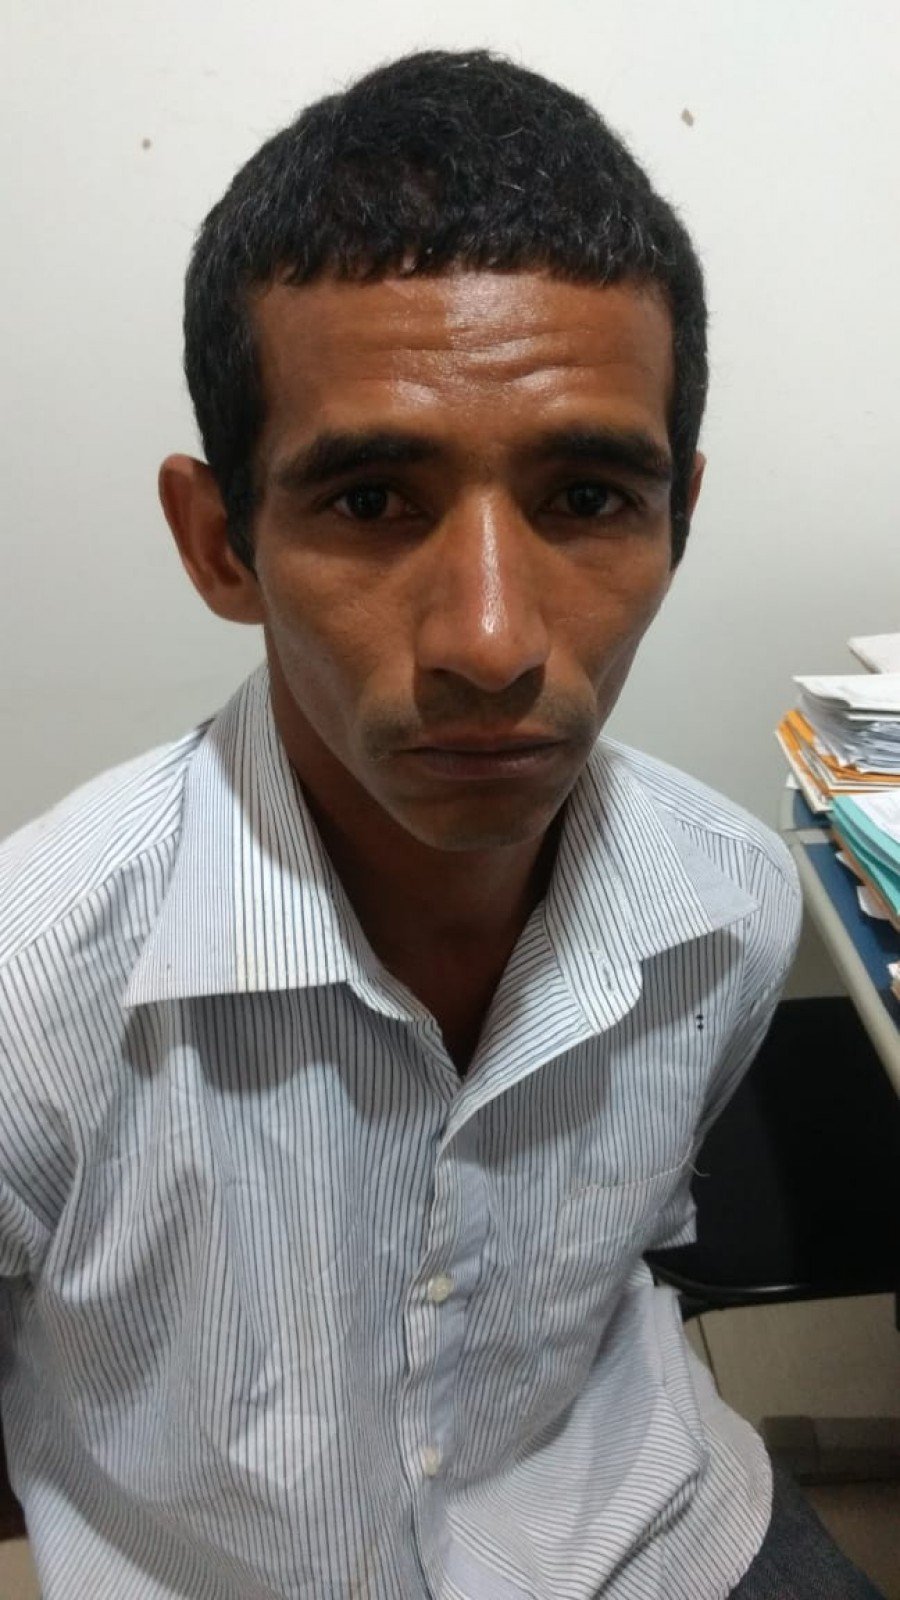 Foragido foi preso pela PM em CristalÃ¢ndia depois de cometer furtos